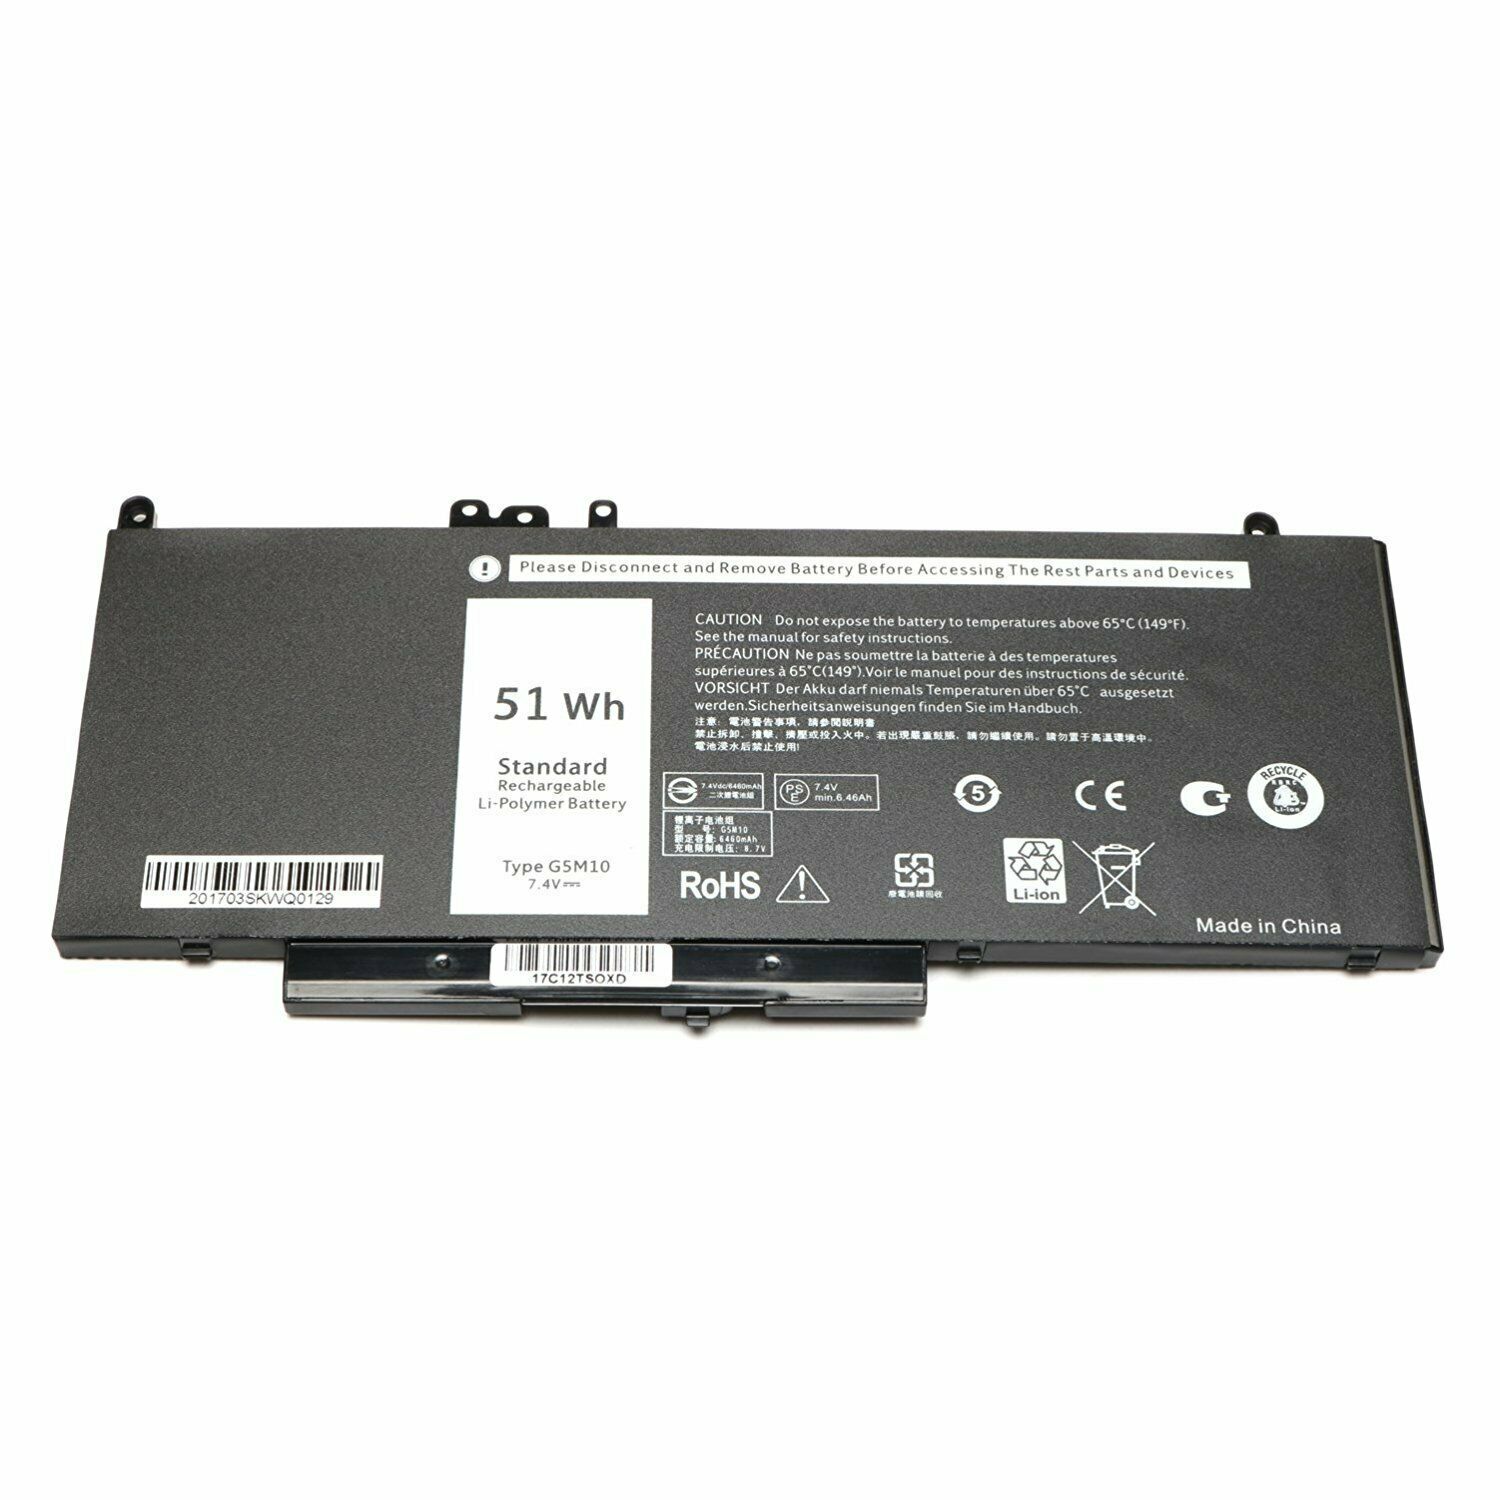 Bateria para 51Wh G5M10 Dell Latitude E5250 E5270 E5450 E5550 WYJC2 8V5GX F5WW5